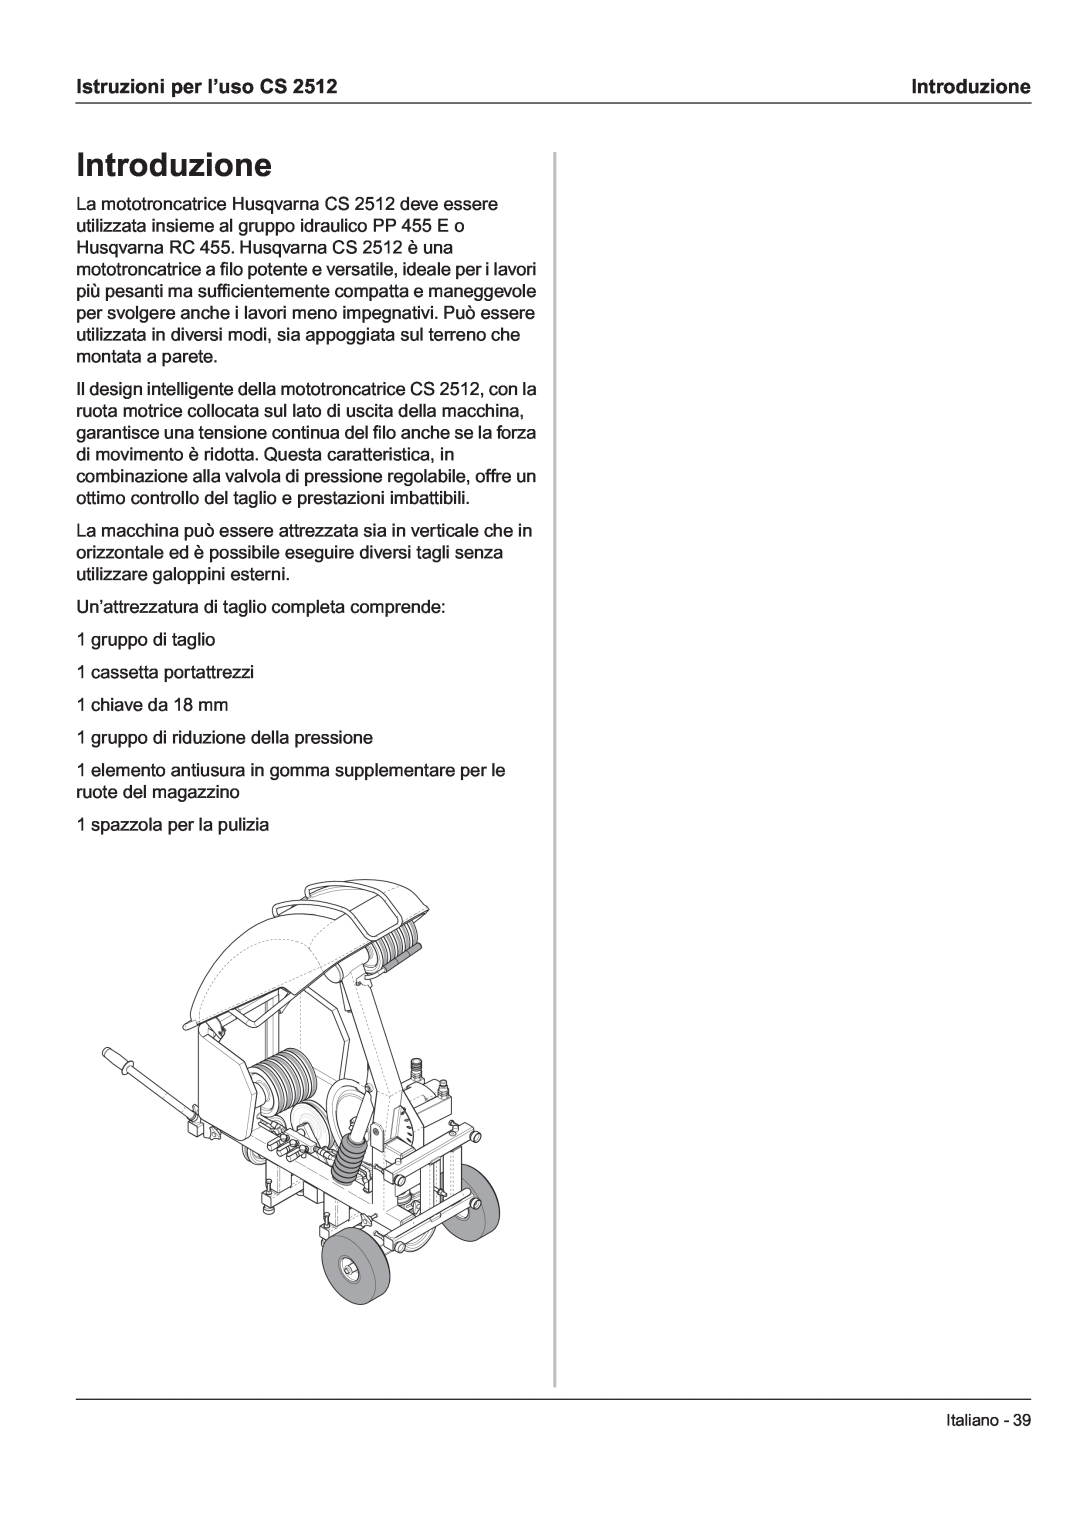 Husqvarna CS 2512 manual Introduzione, Istruzioni per l’uso CS 